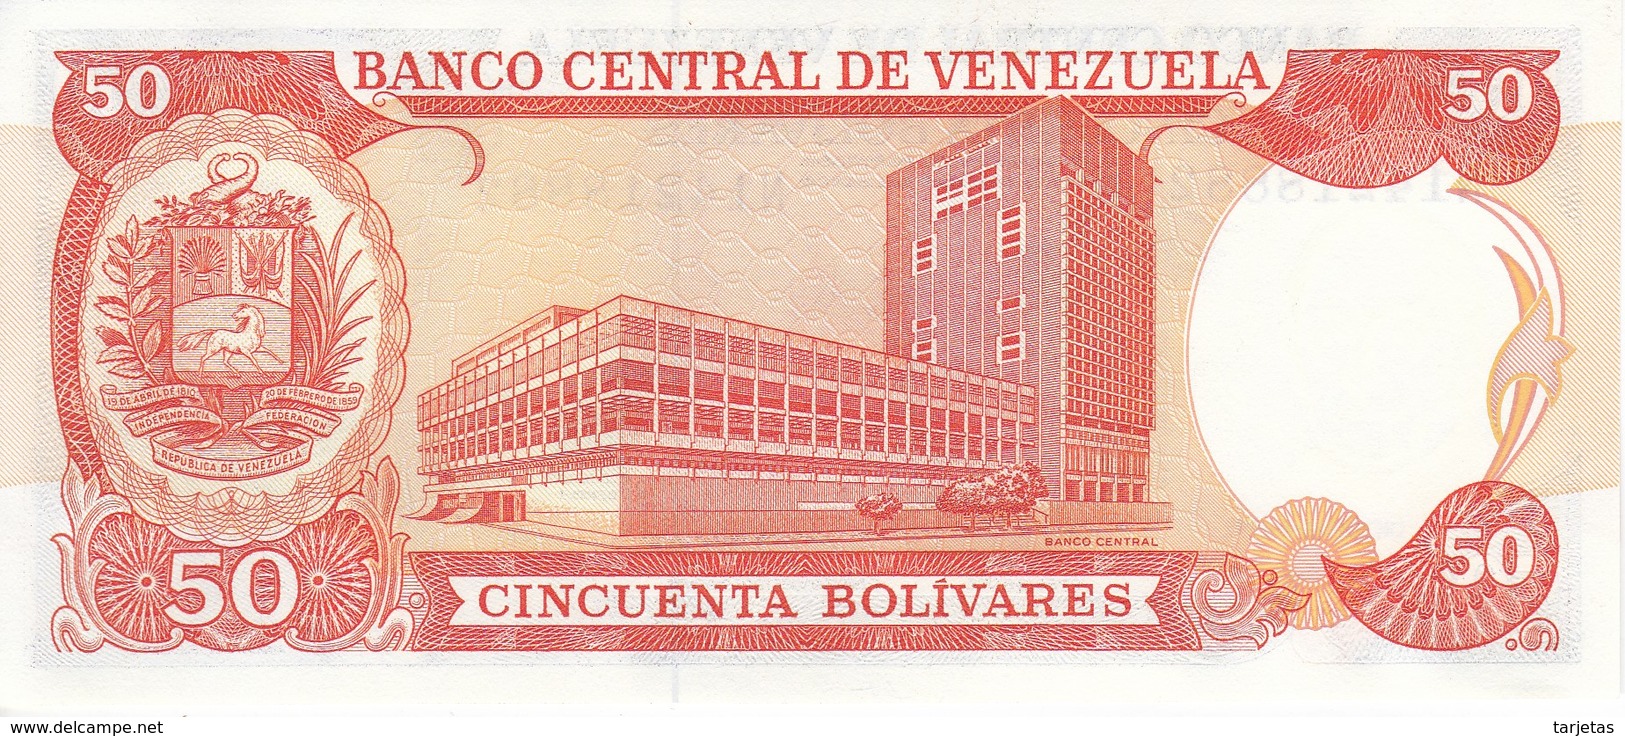 BILLETE DE VENEZUELA DE 50 BOLIVARES DEL AÑO 1992 SIN CIRCULAR  (BANKNOTE) UNCIRCULATED - Venezuela